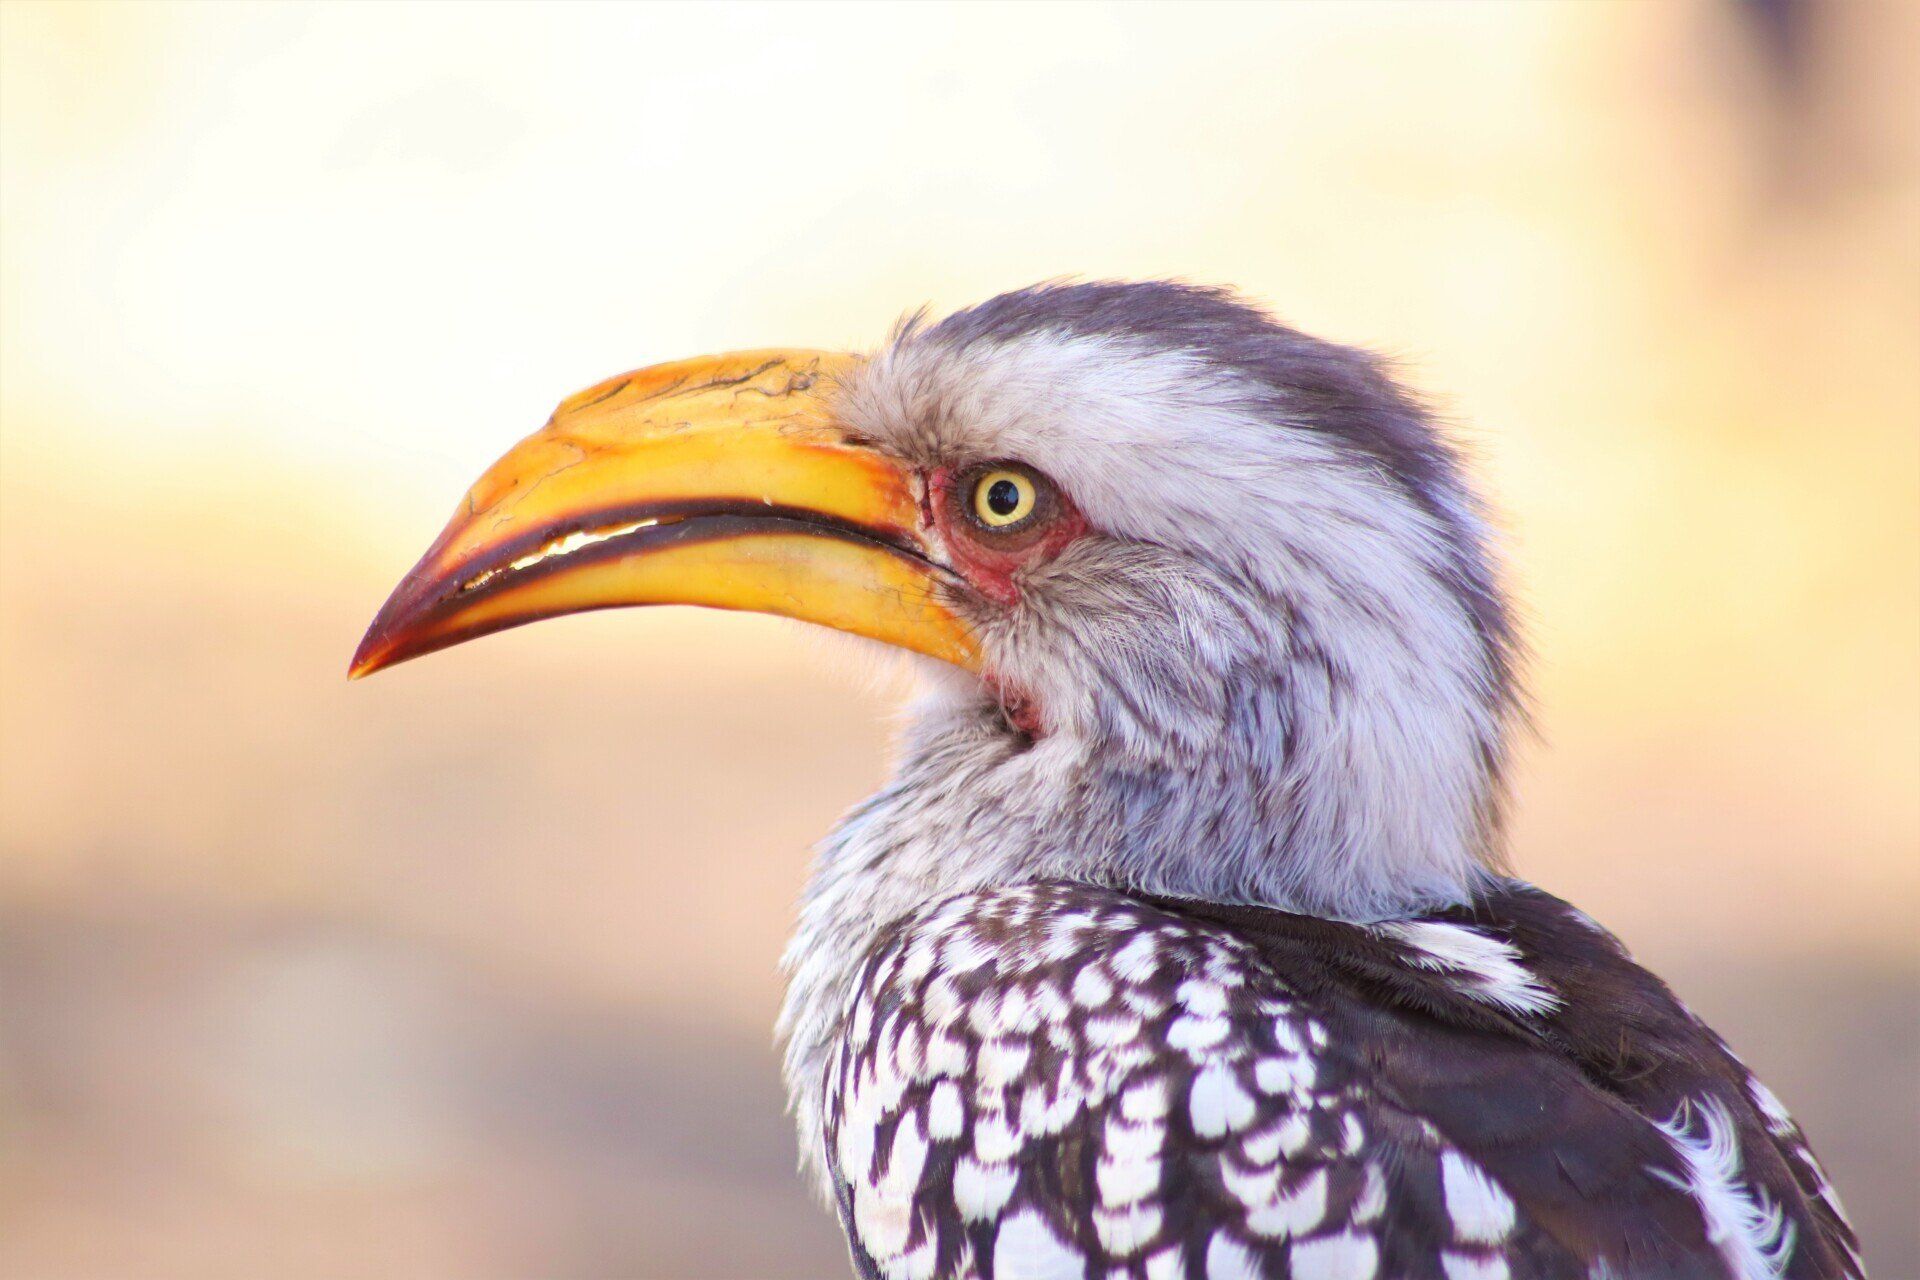 a close up of a bird with a yellow beak